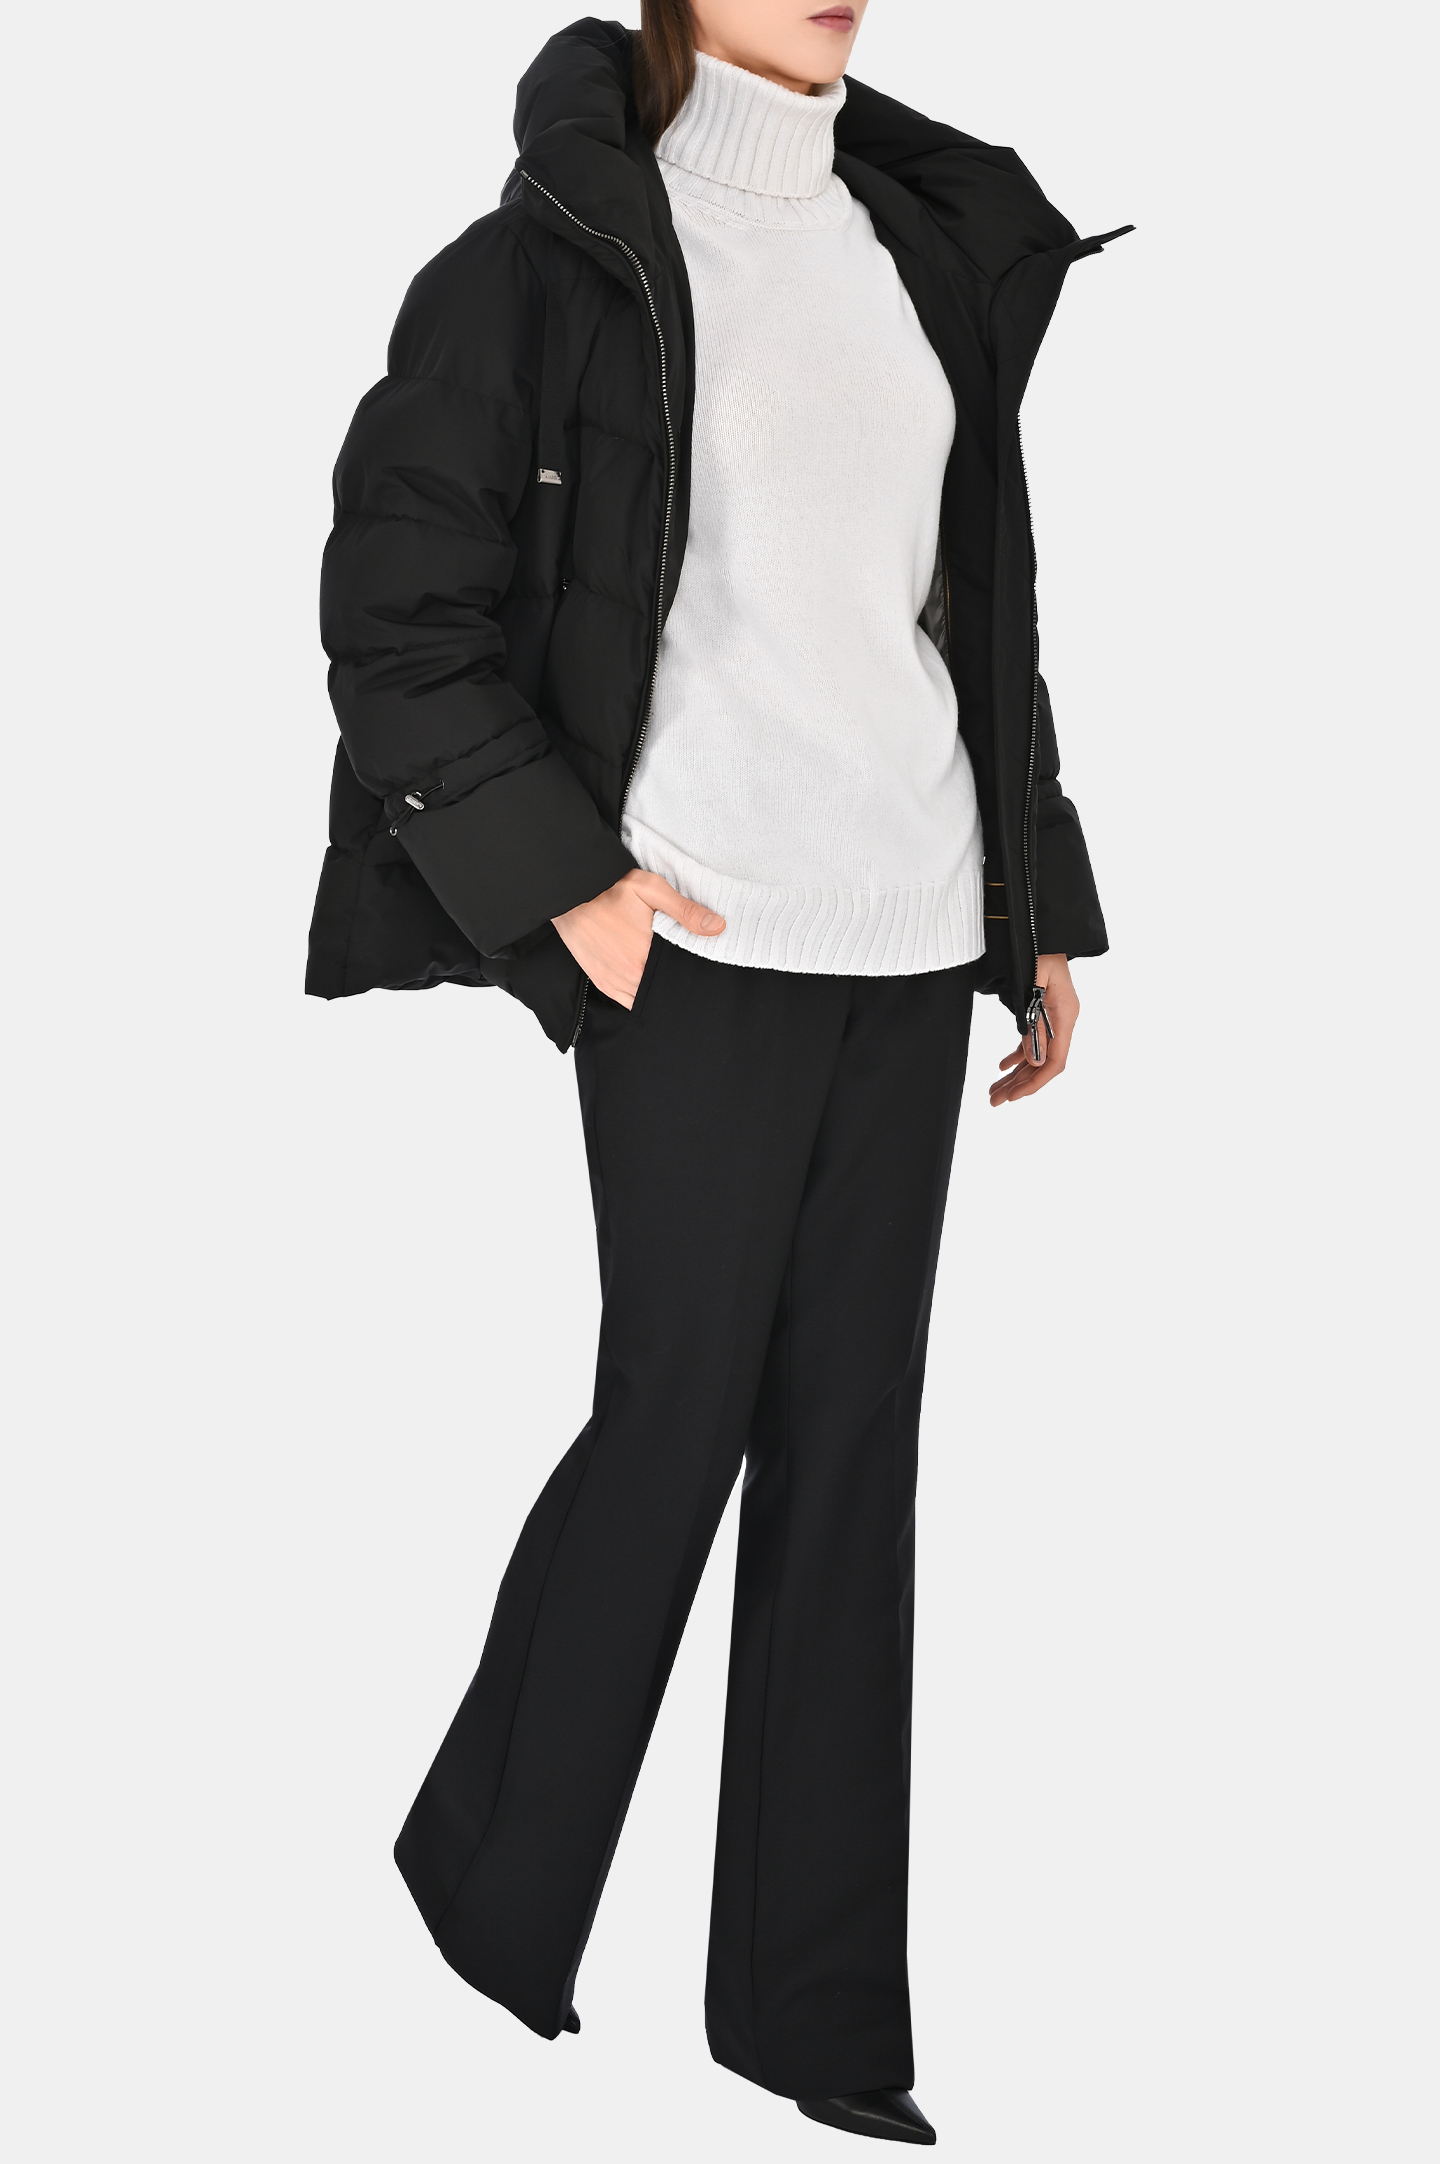 Куртка MOORER MODPI200001-TEPA023, цвет: Черный, Женский